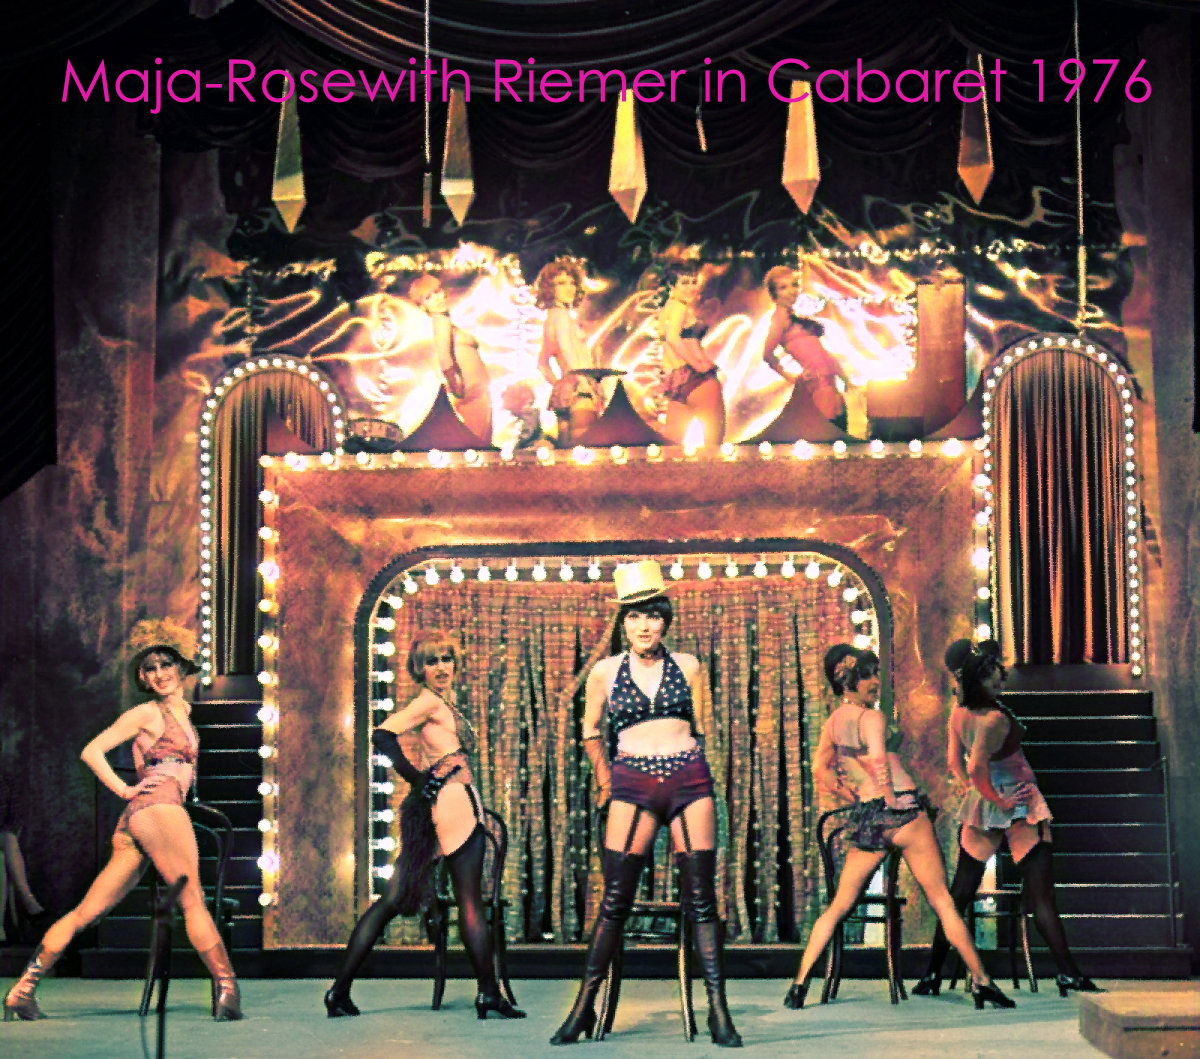 Cabaret 1976 Maja-Rosewith Riemer